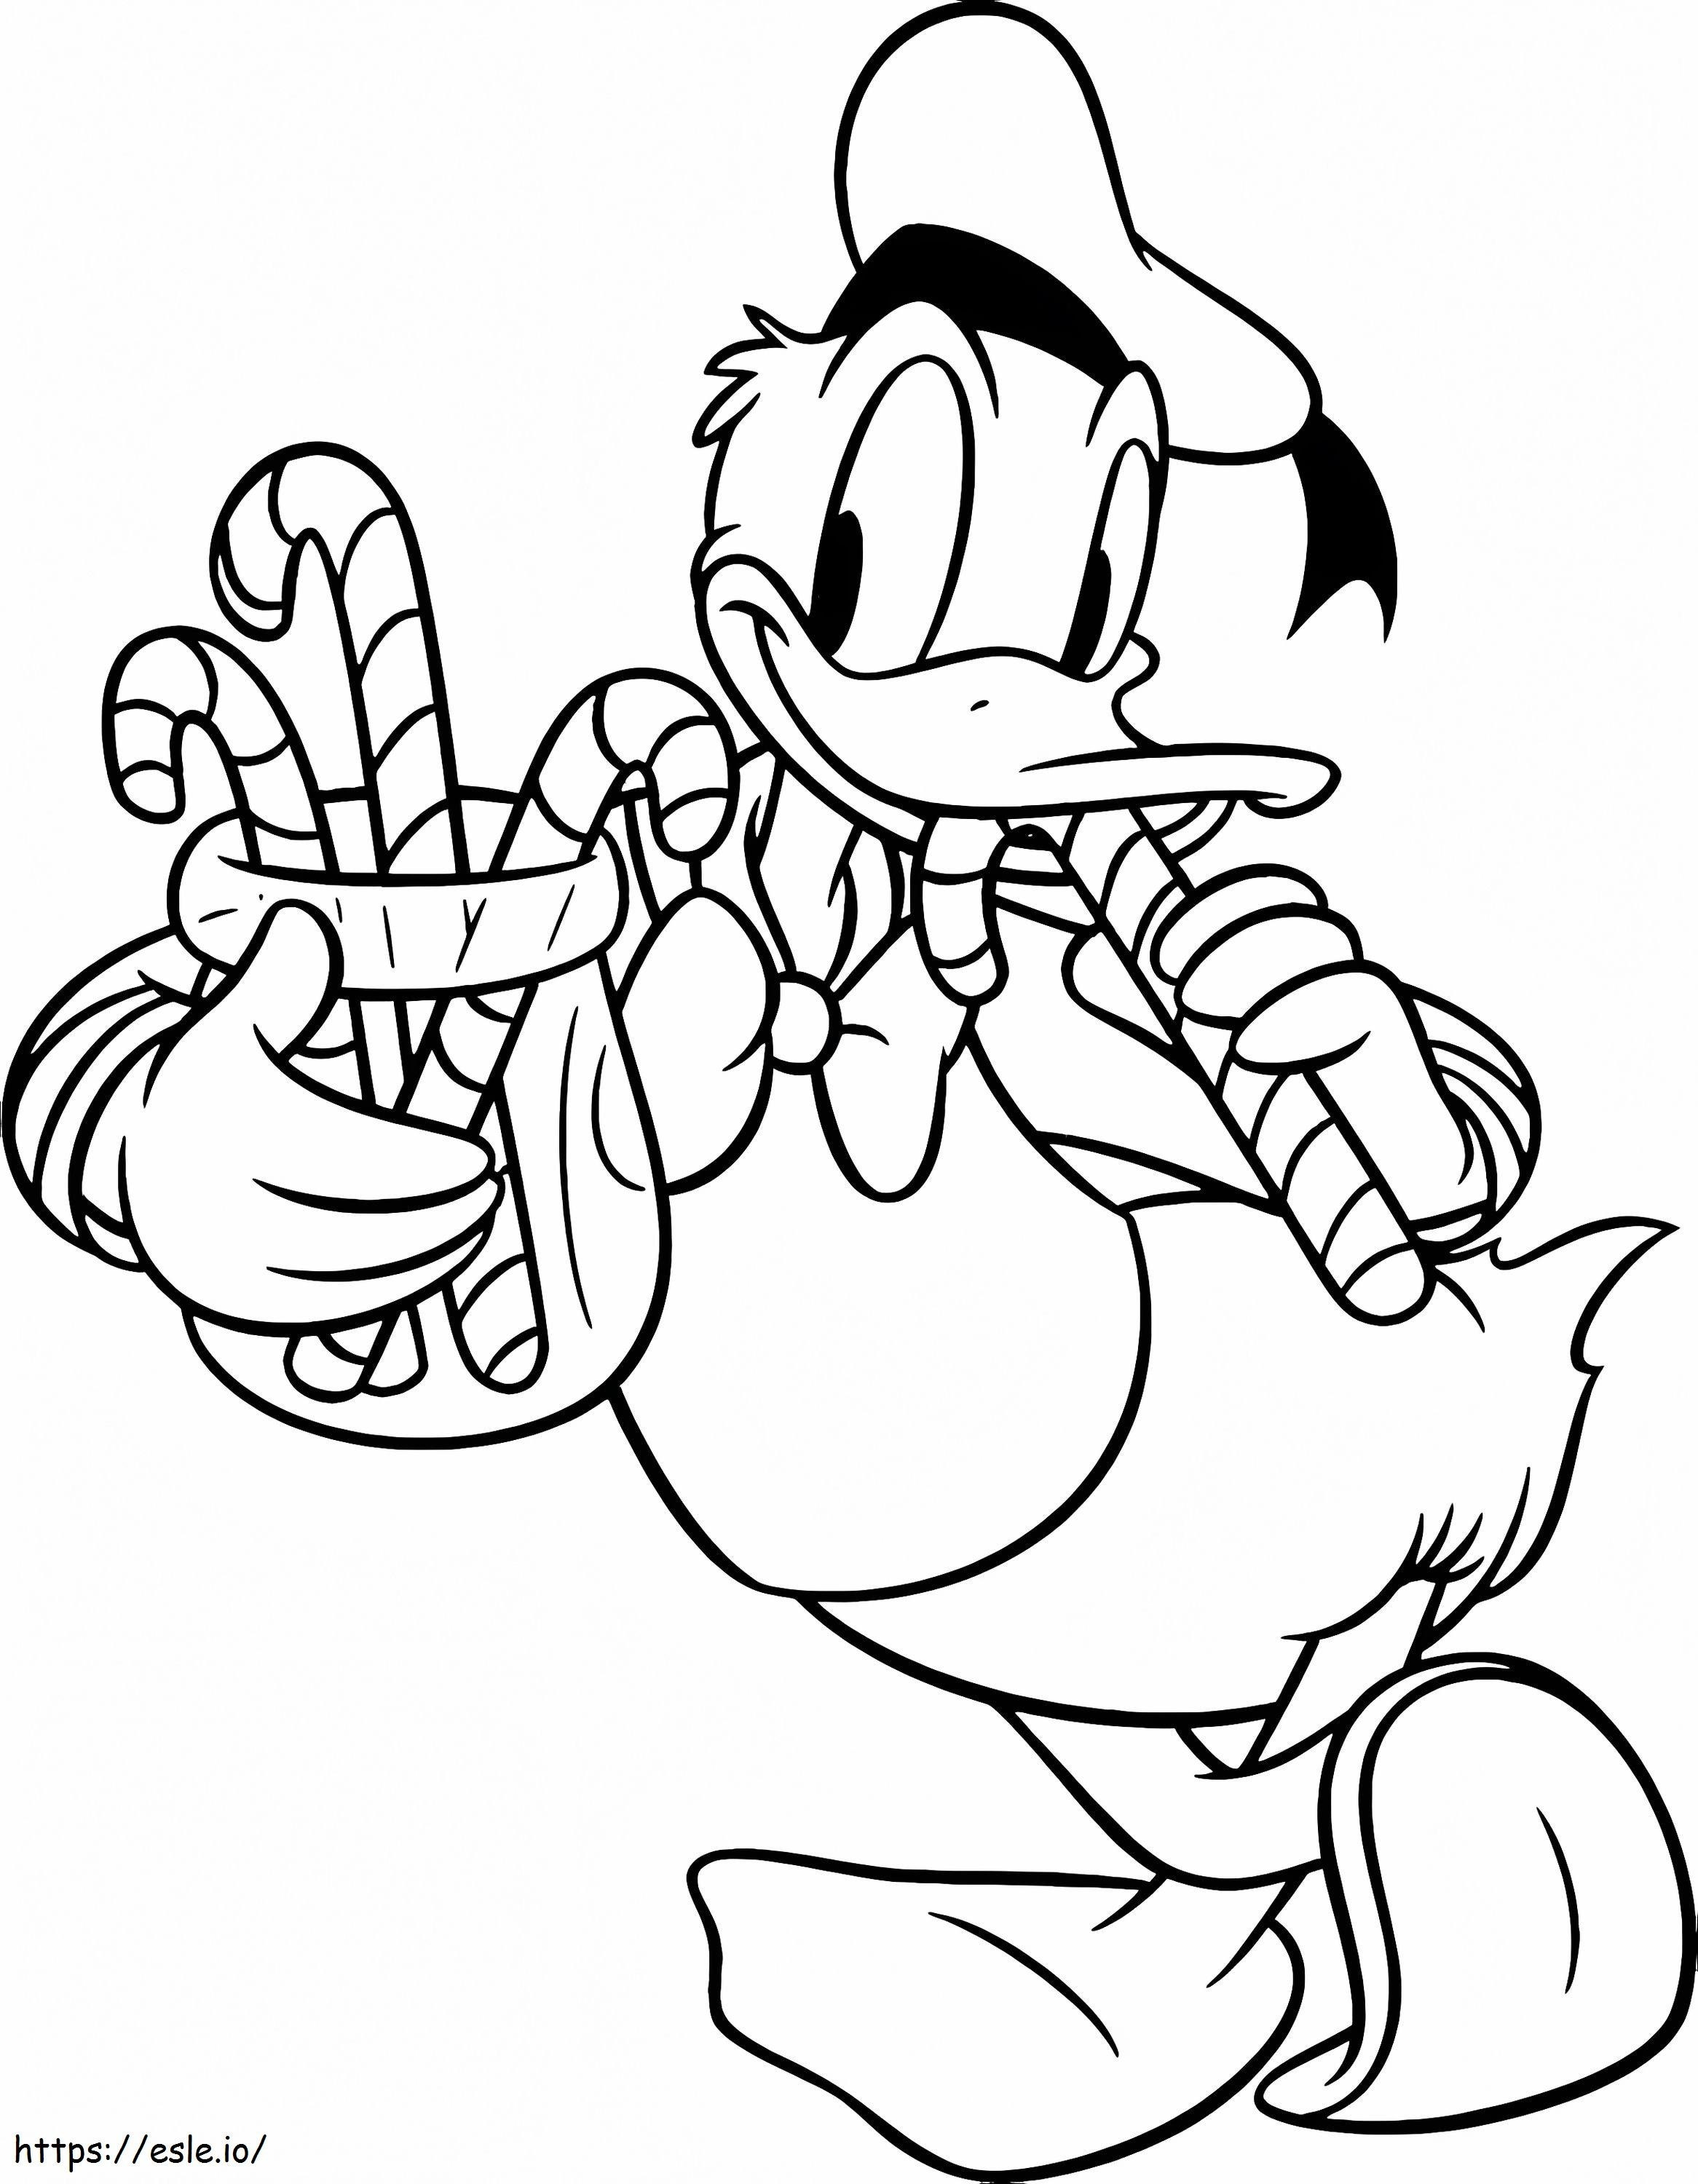 Coloriage Donald Duck avec des cannes de bonbon à imprimer dessin